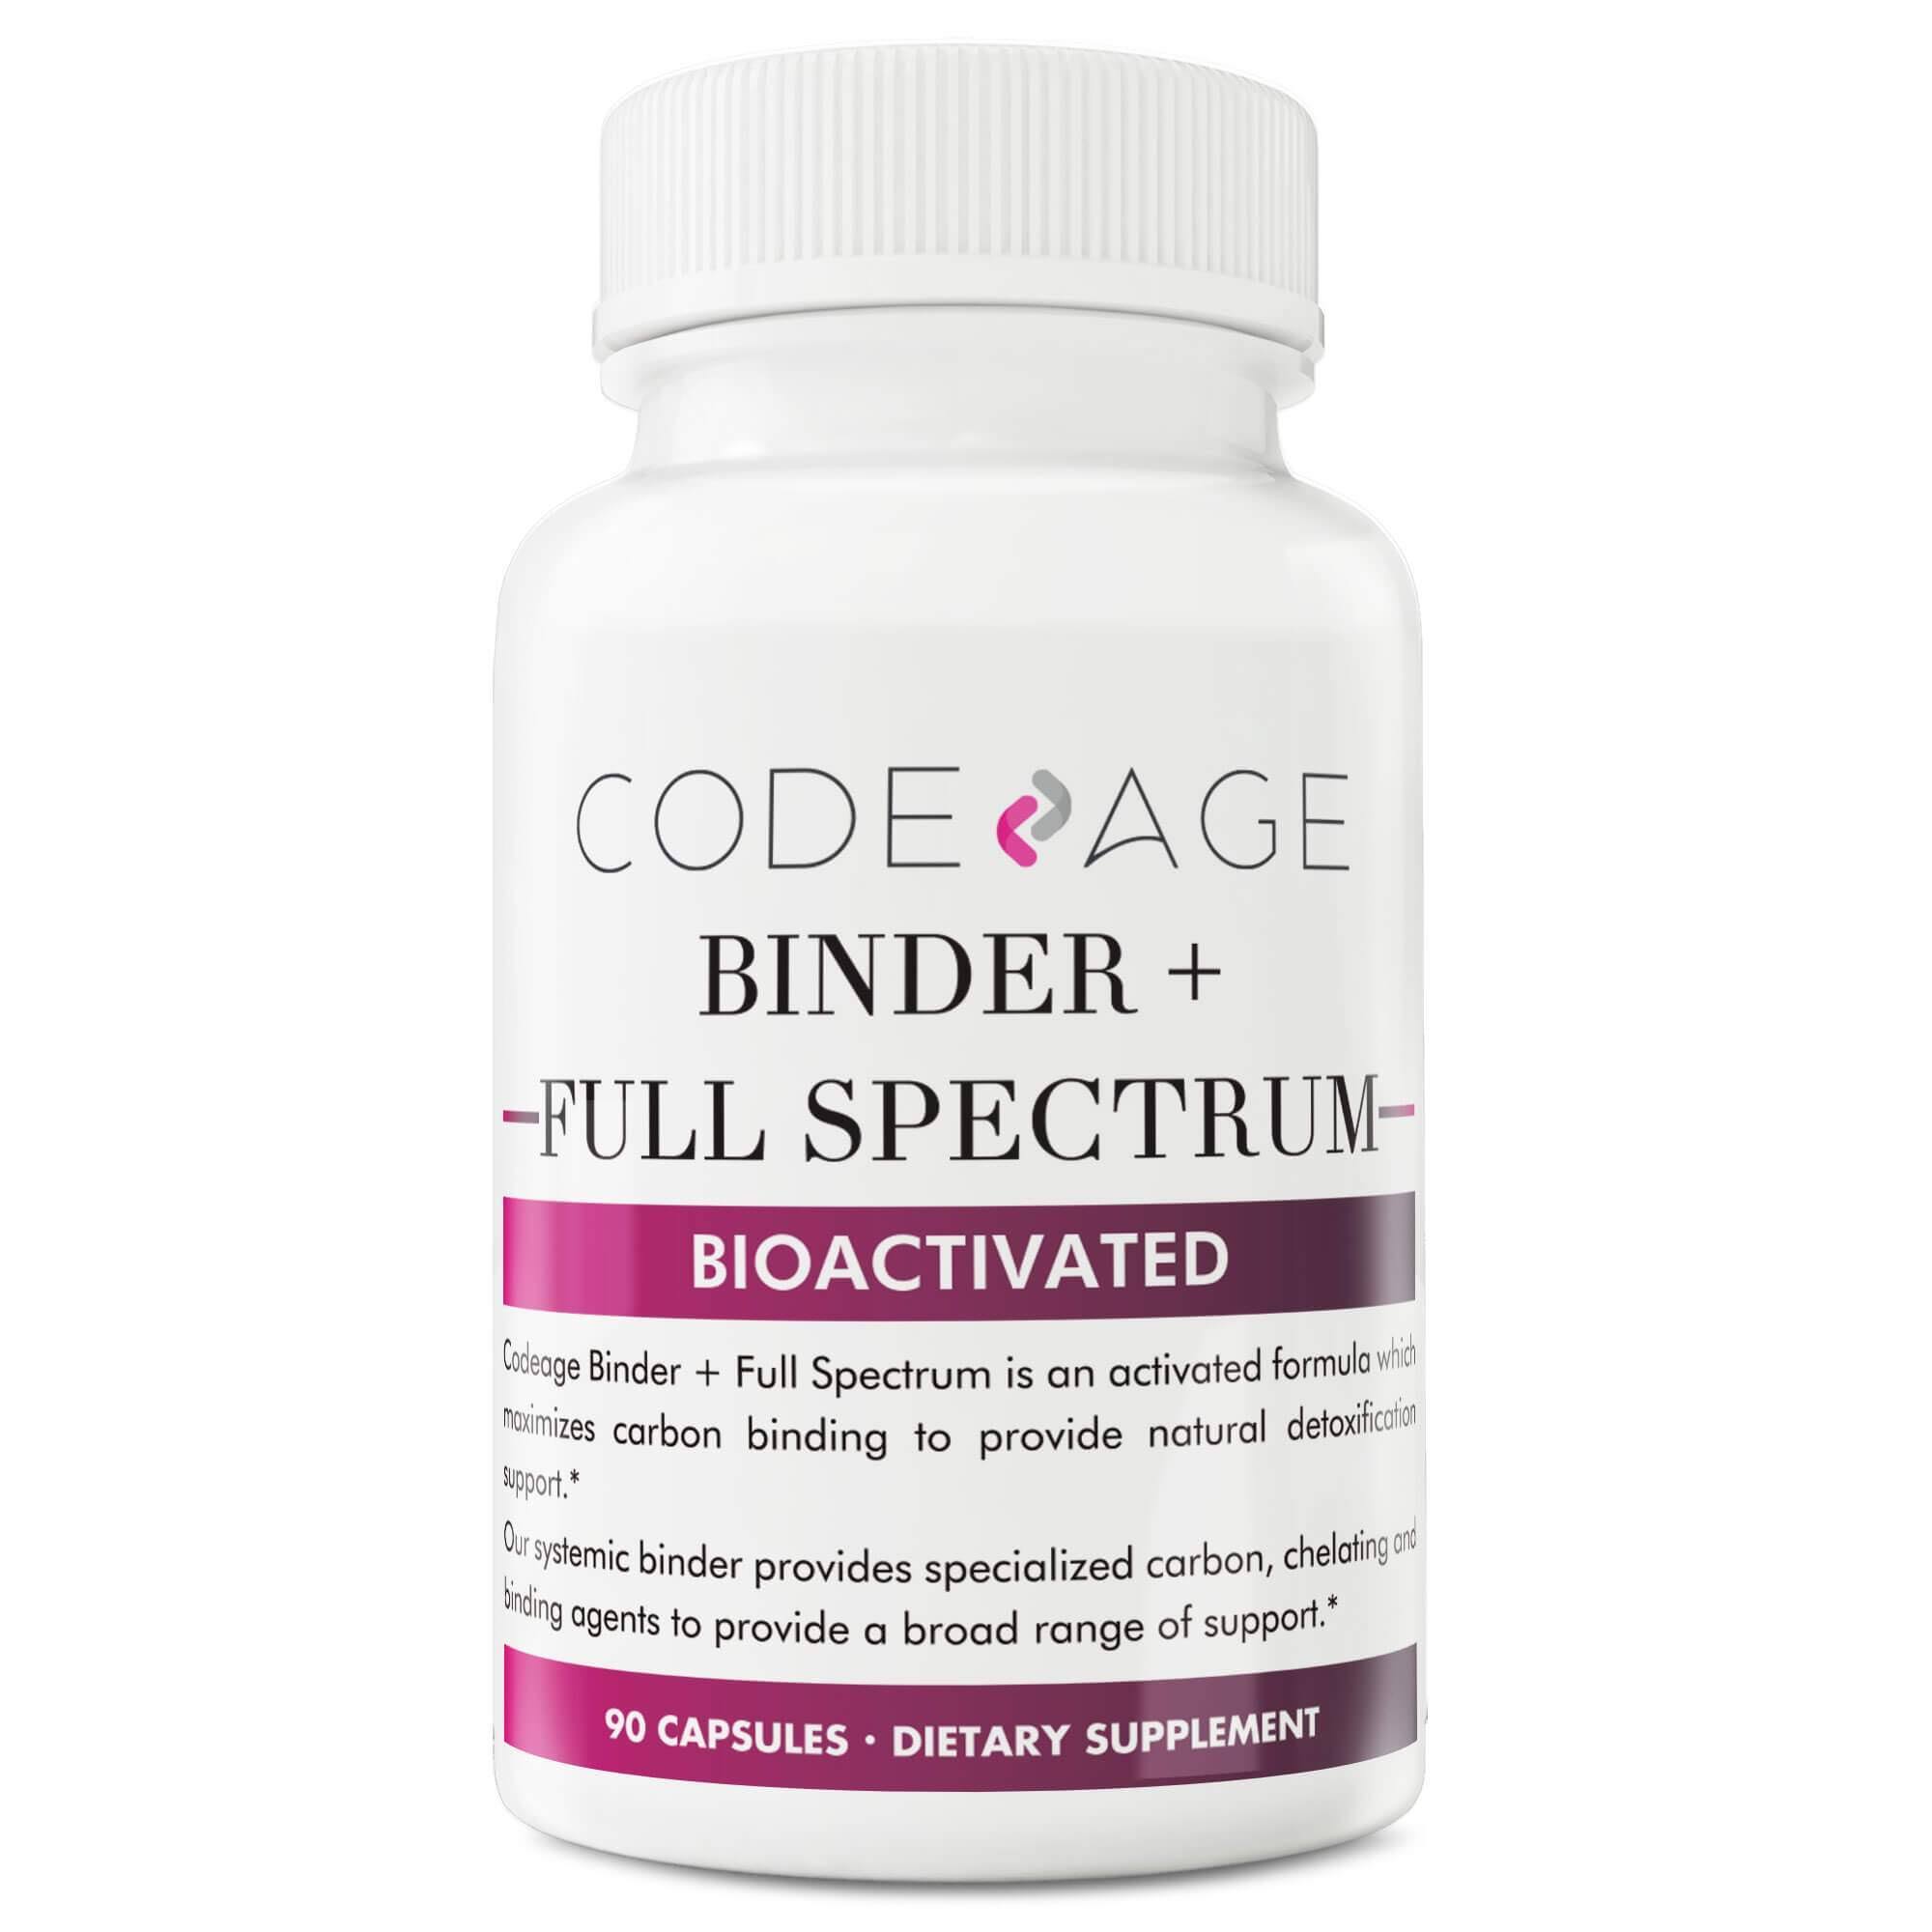 Codeage, Binder +, Full Spectrum, Vegan, Plant-Based, 90 Capsules